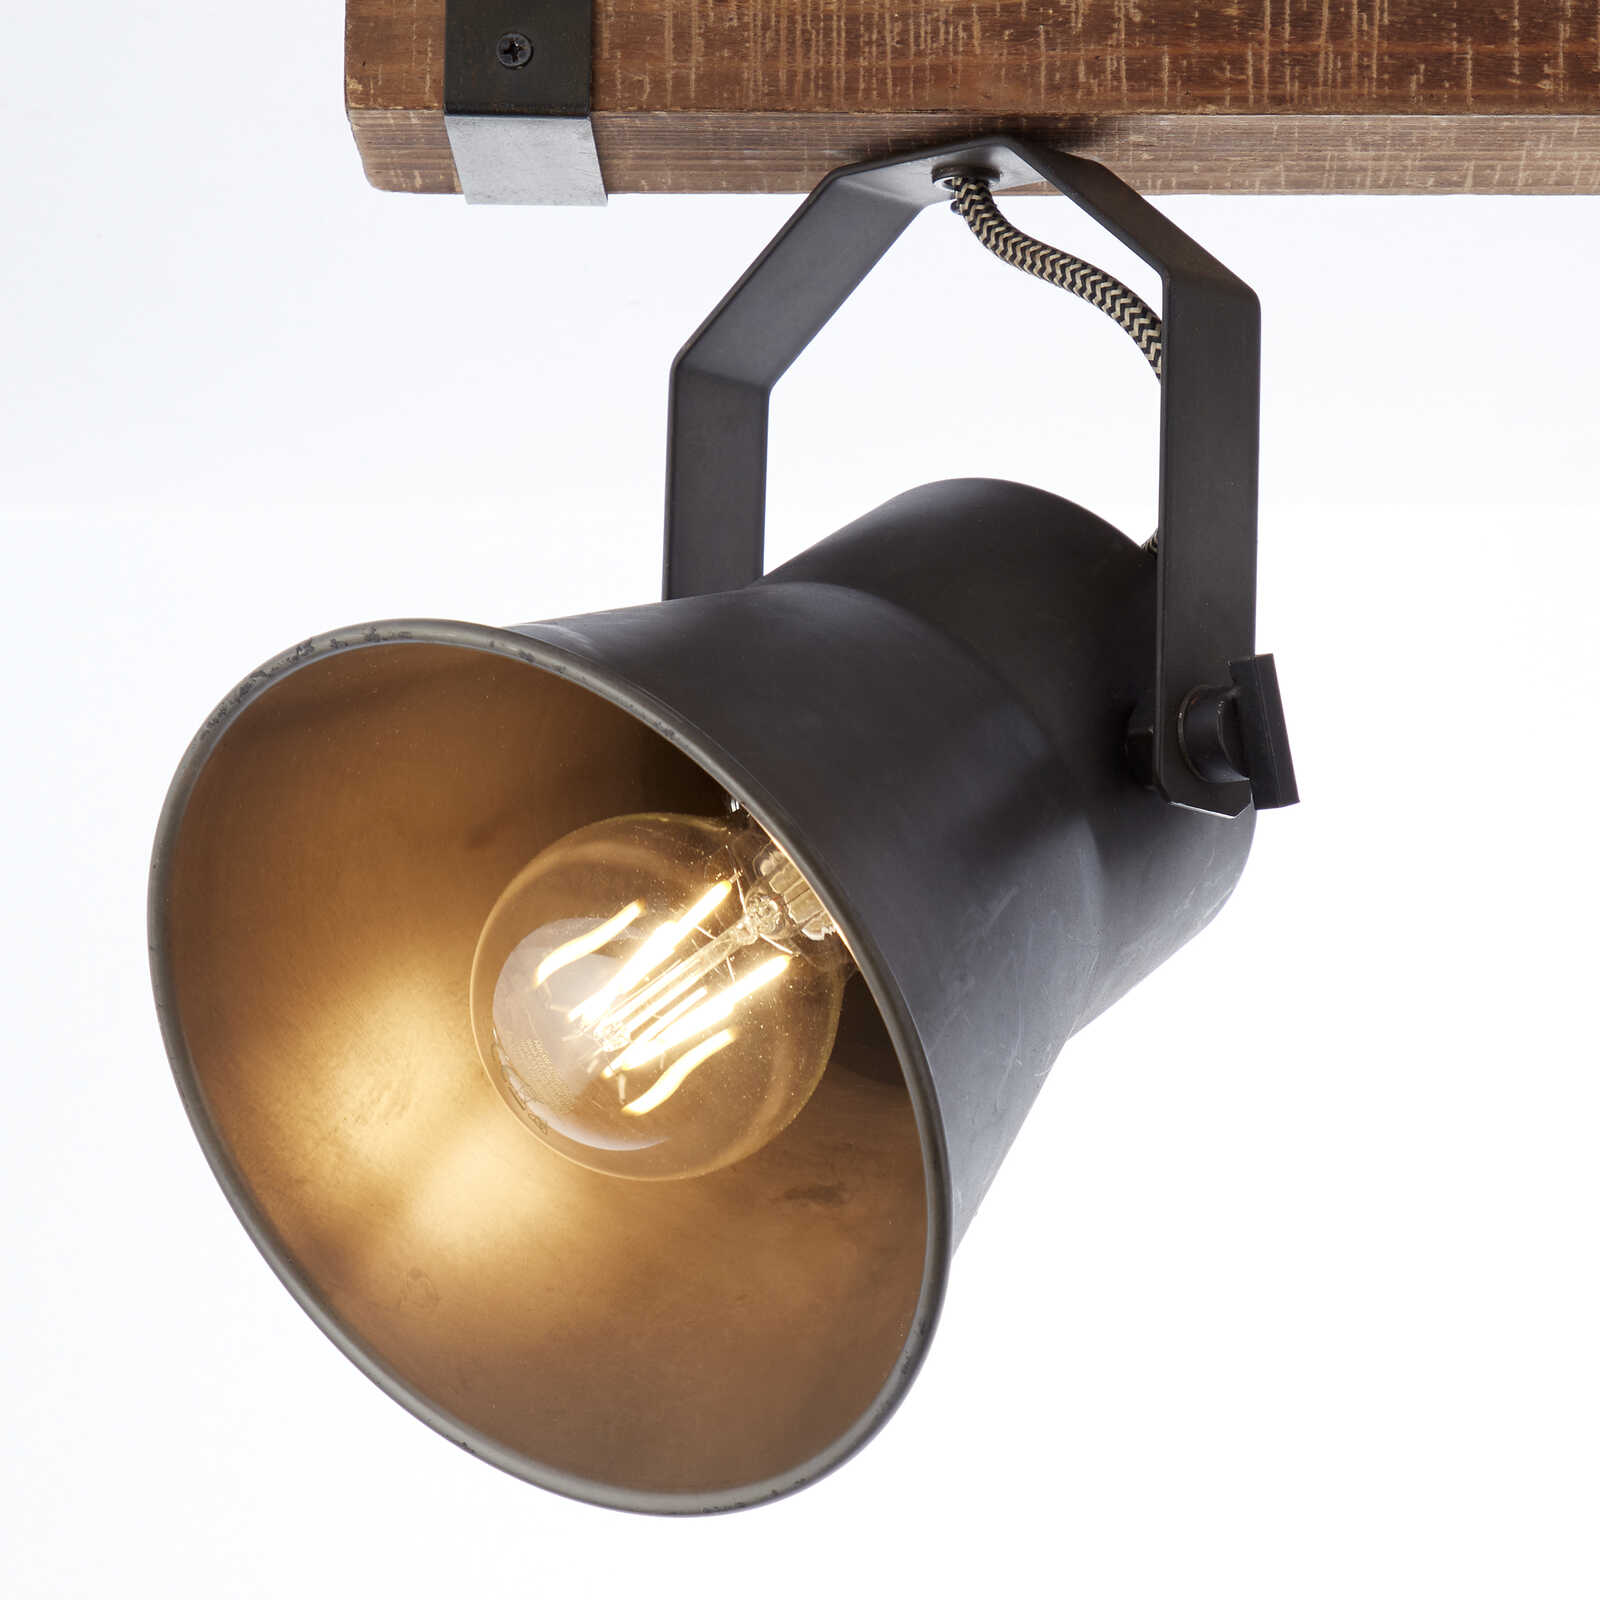             Wooden spotlight bar - Eva 2 - Metallic
        